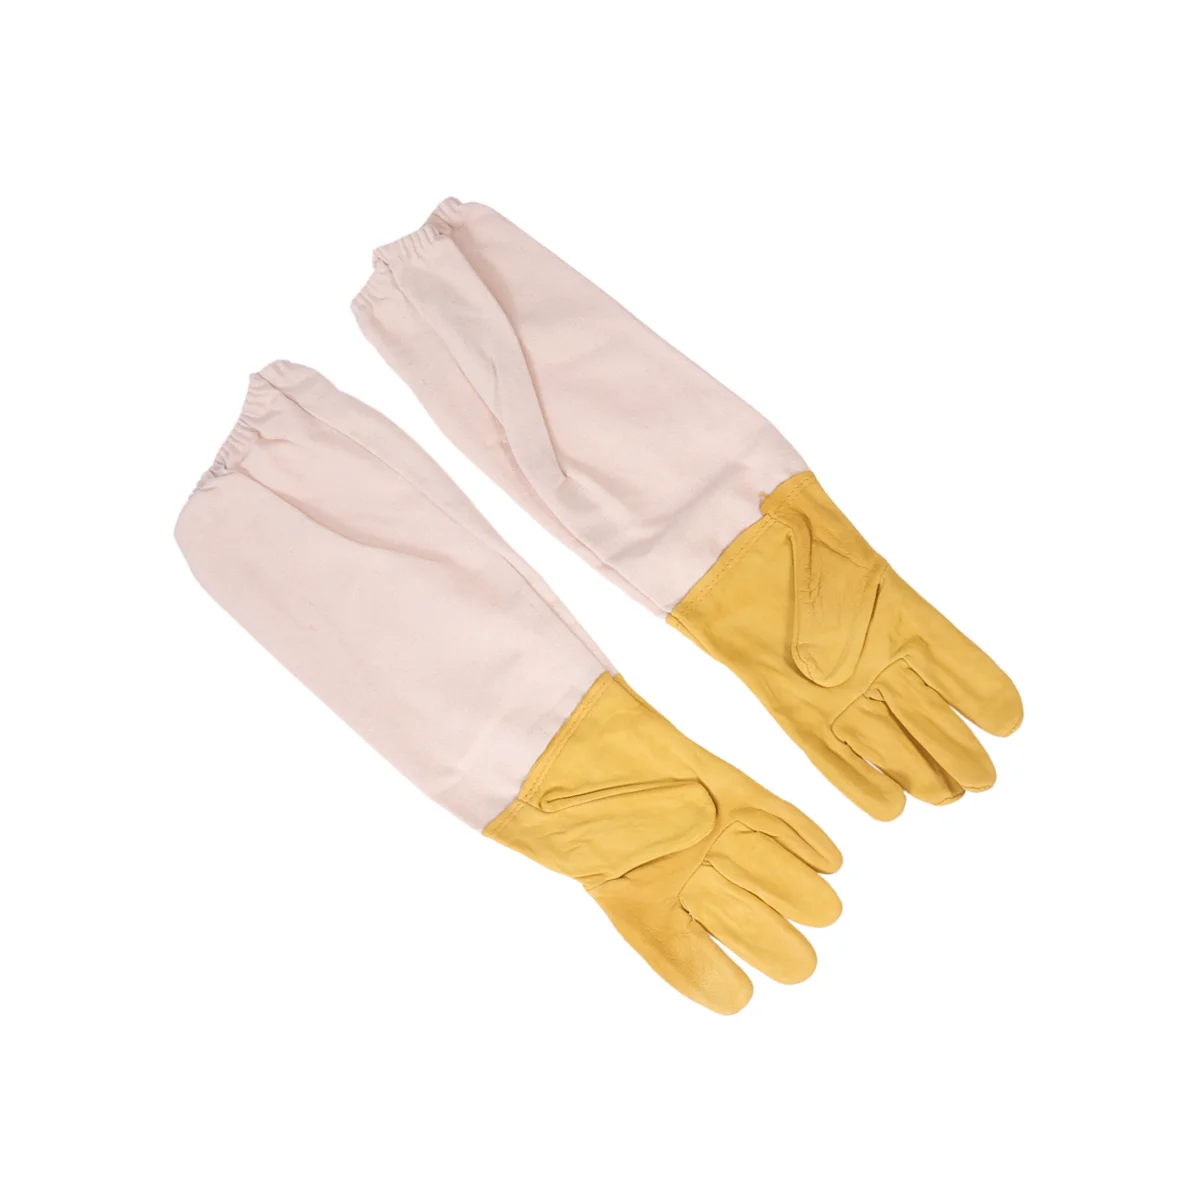 1 пара перчаток для пчеловода, защитные перчатки для пчеловода премиум-класса, перчатки (размер XXL) - 3